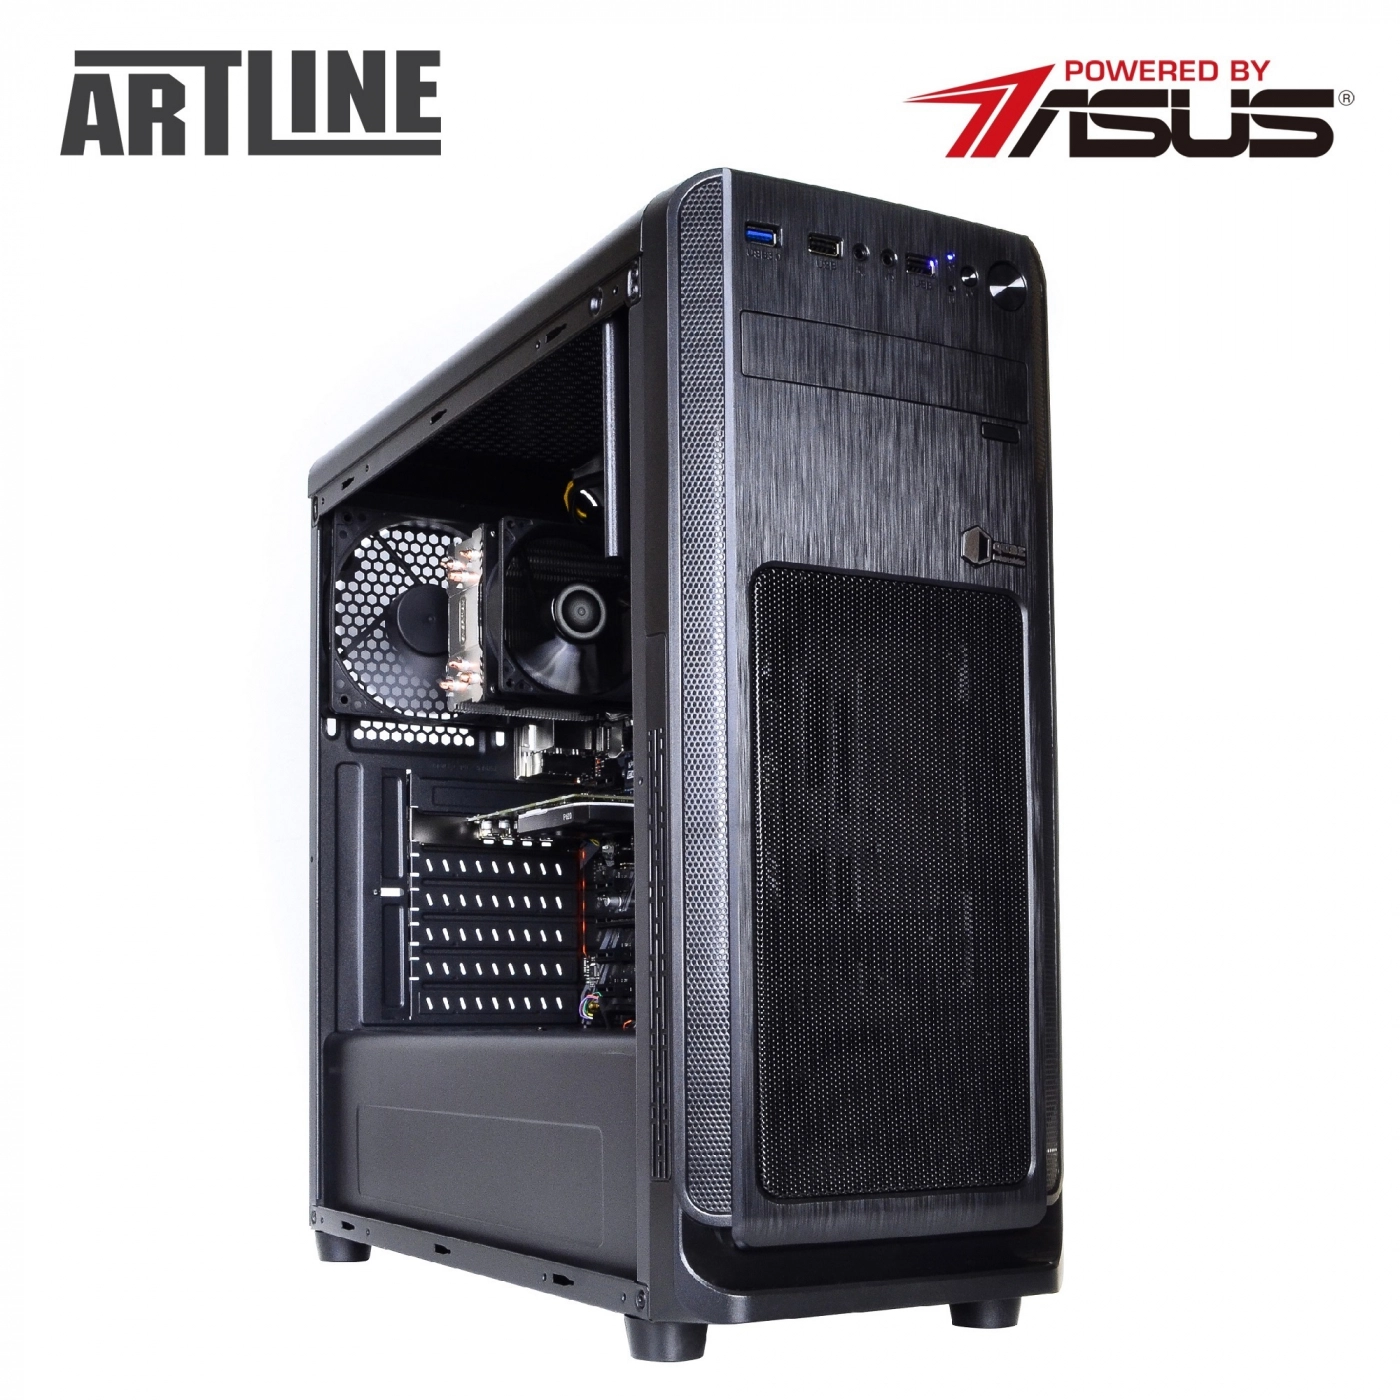 Купить Сервер ARTLINE Business T63v09 - фото 12